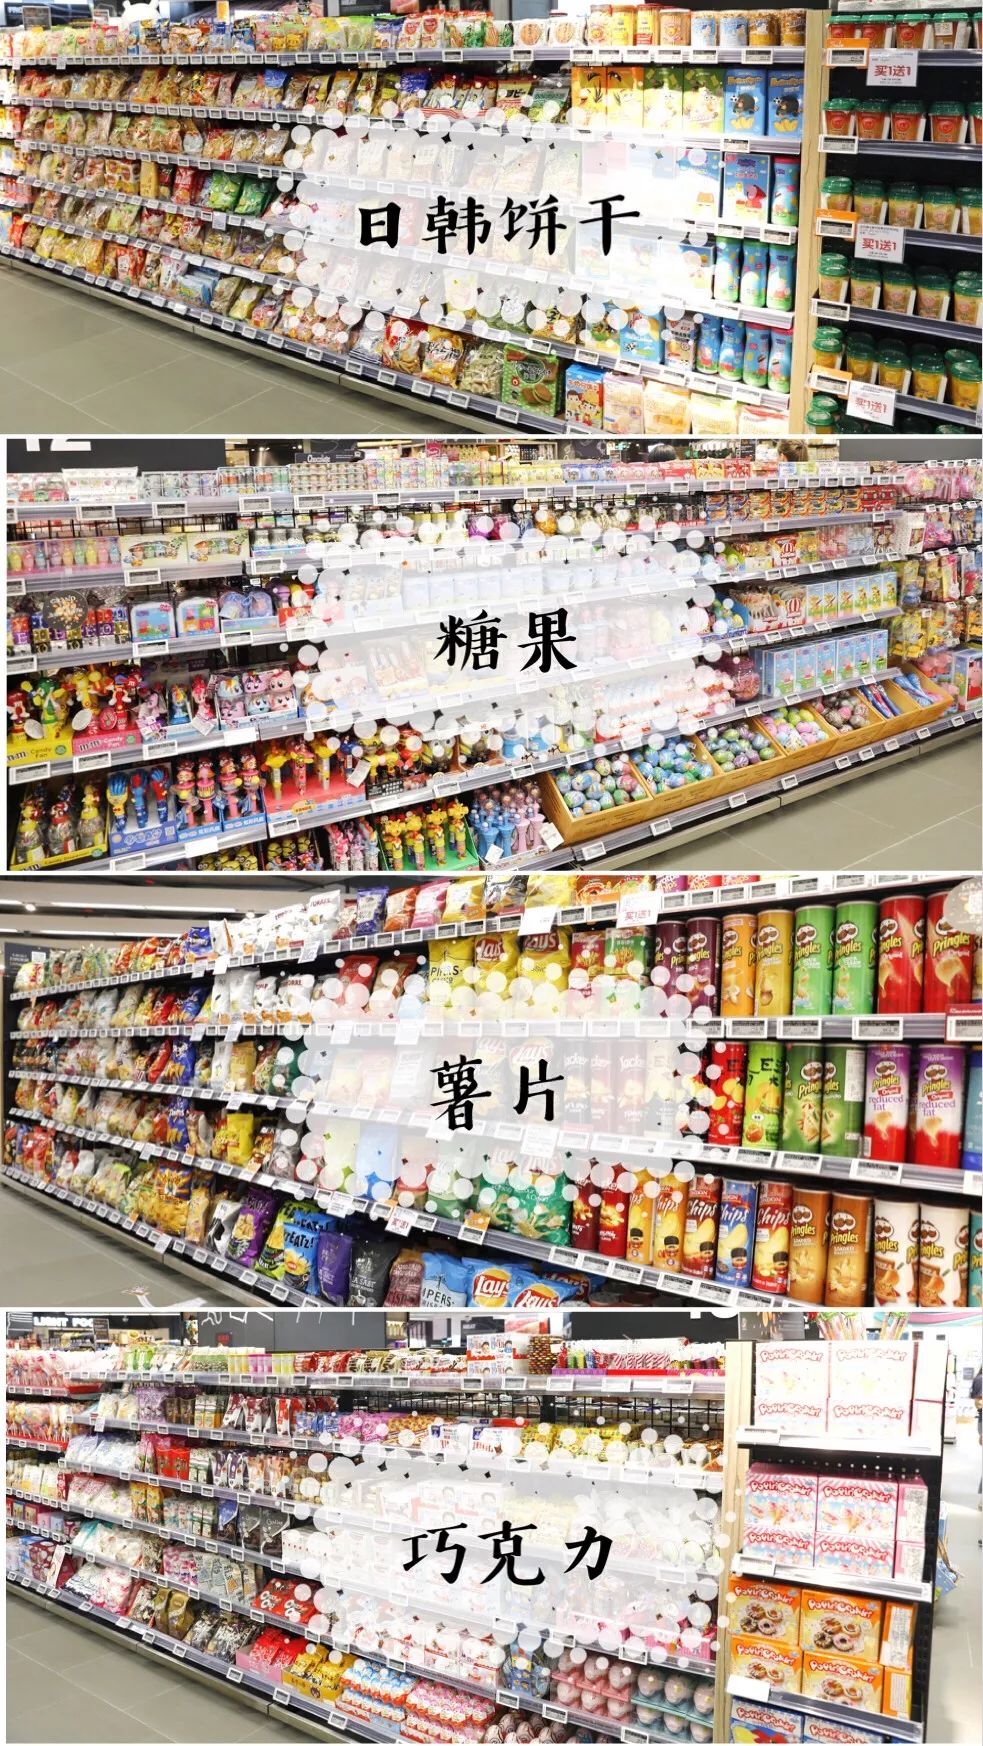 中山市taste超市官网_taste超市_广州taste超市营业时间